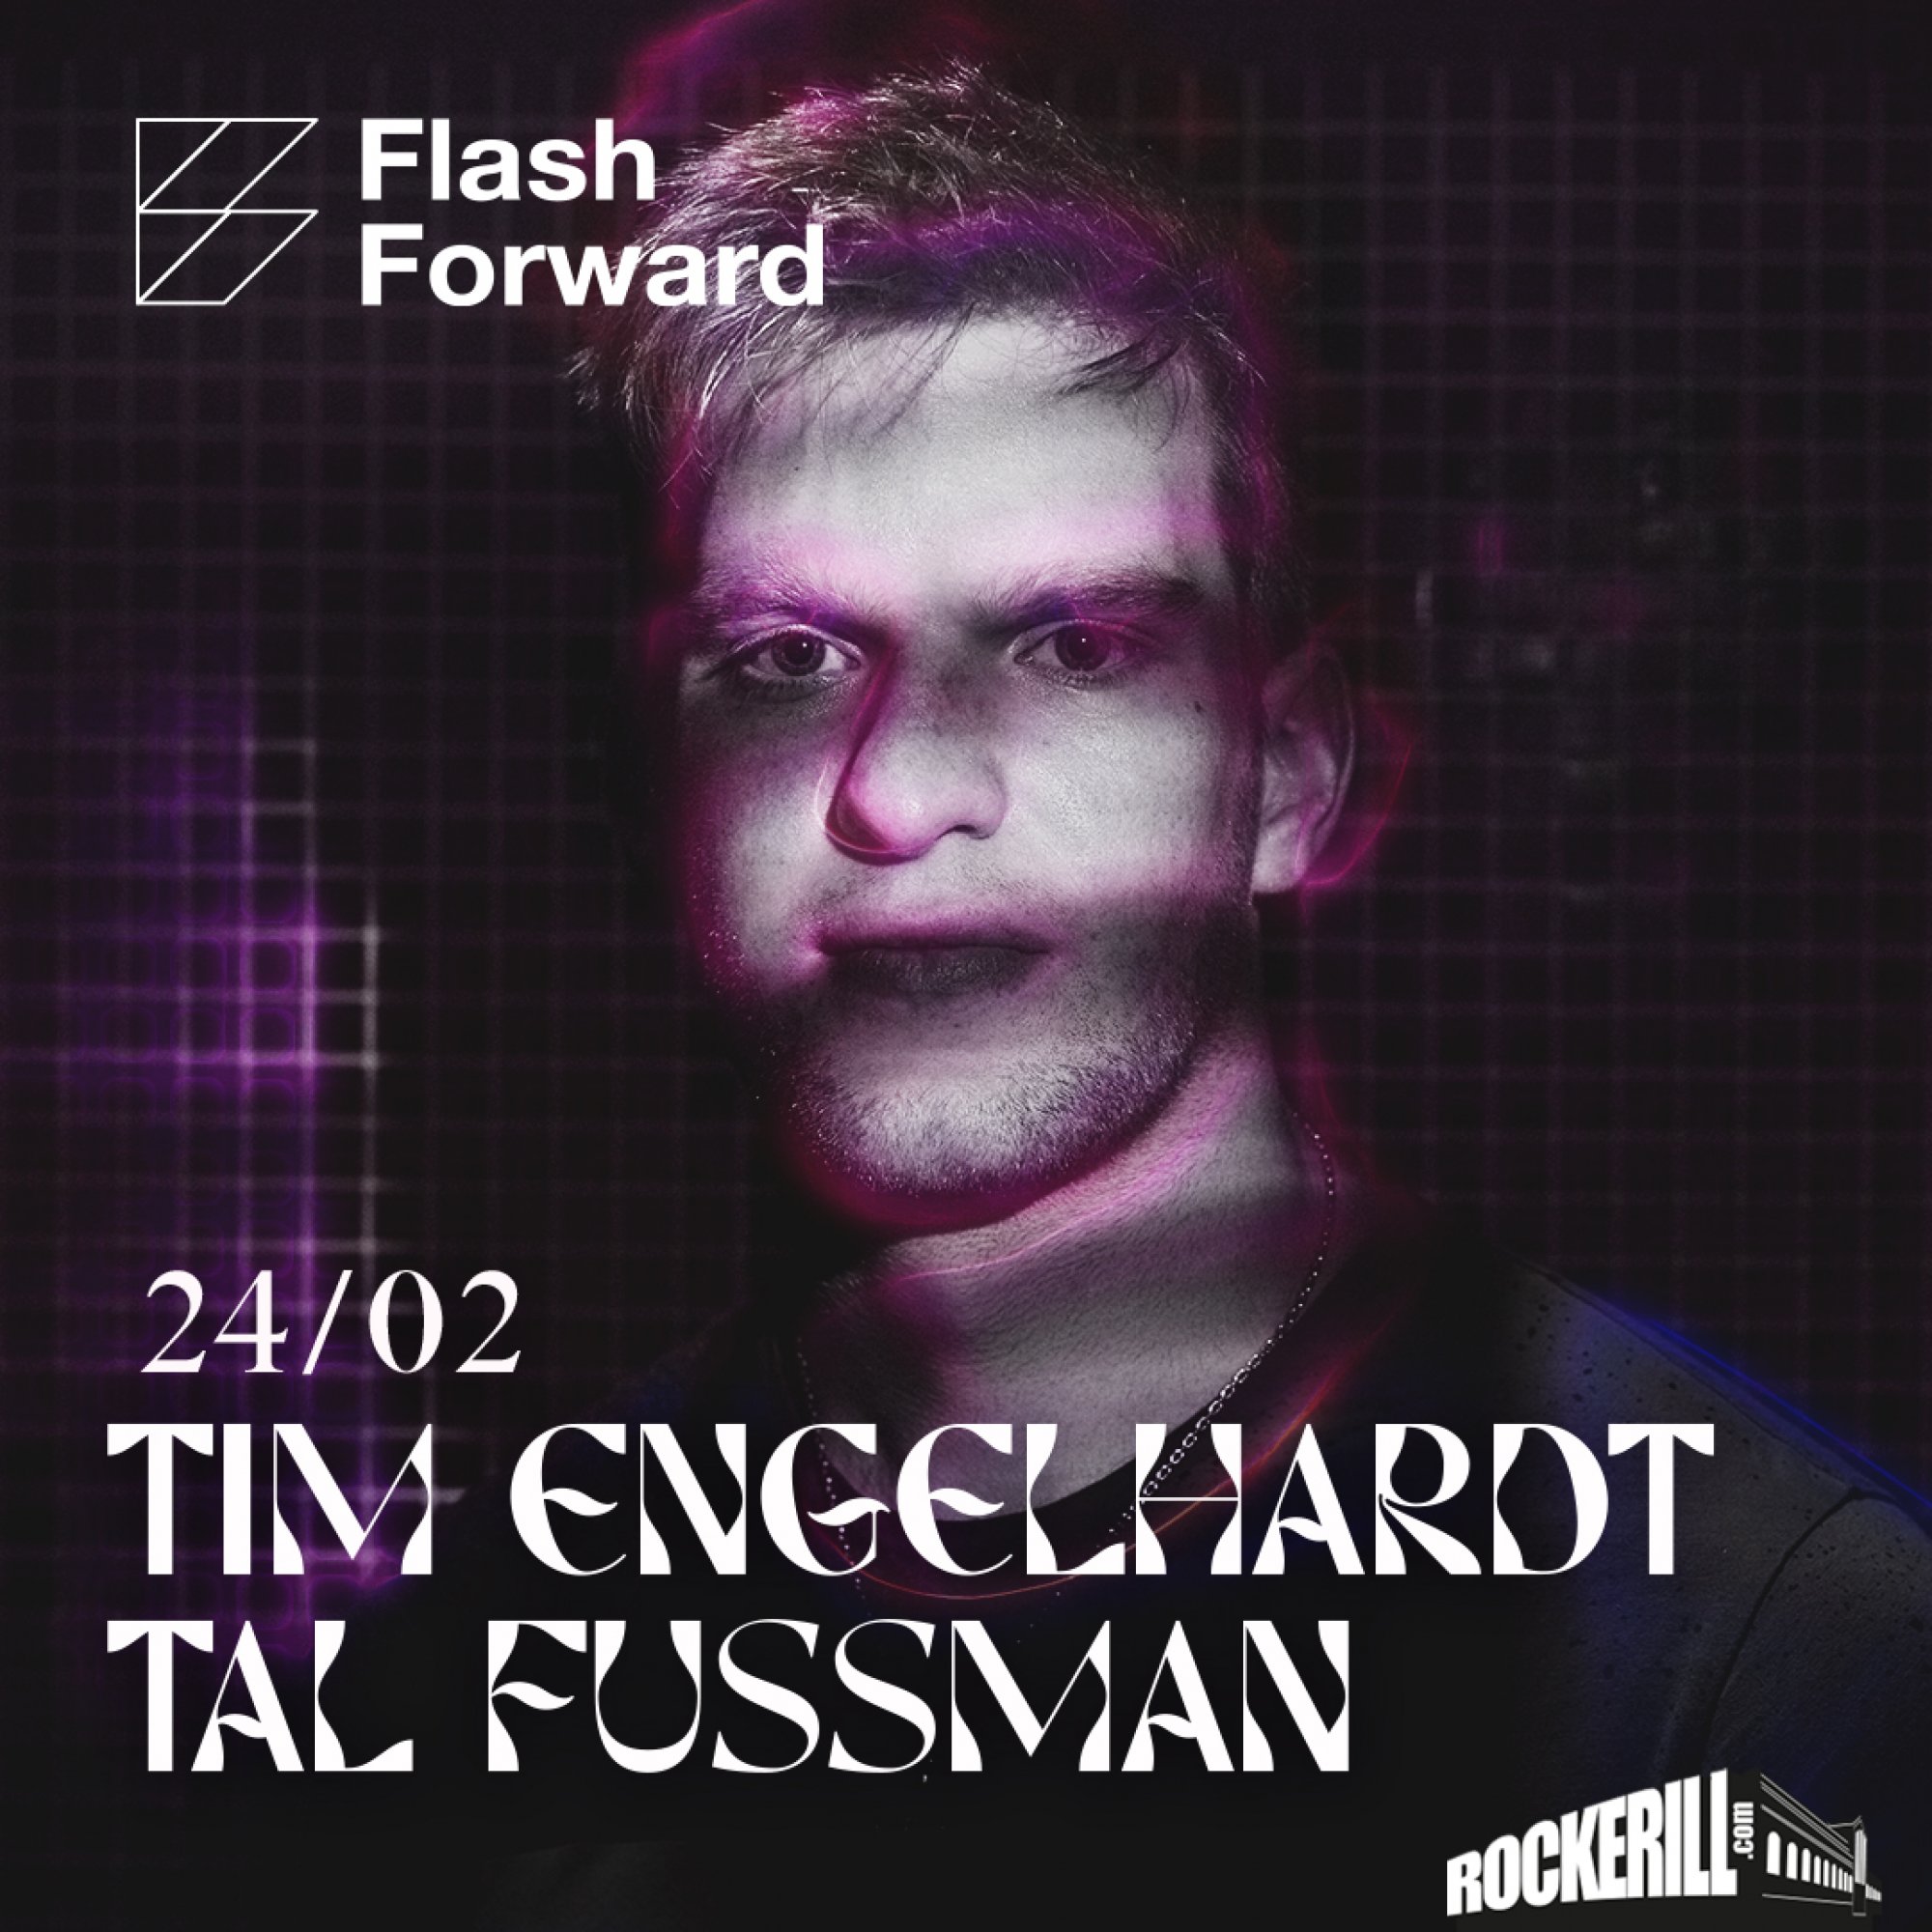 FLASHFORWARD: TIM ENGELHARDT + TAL FUSMANN